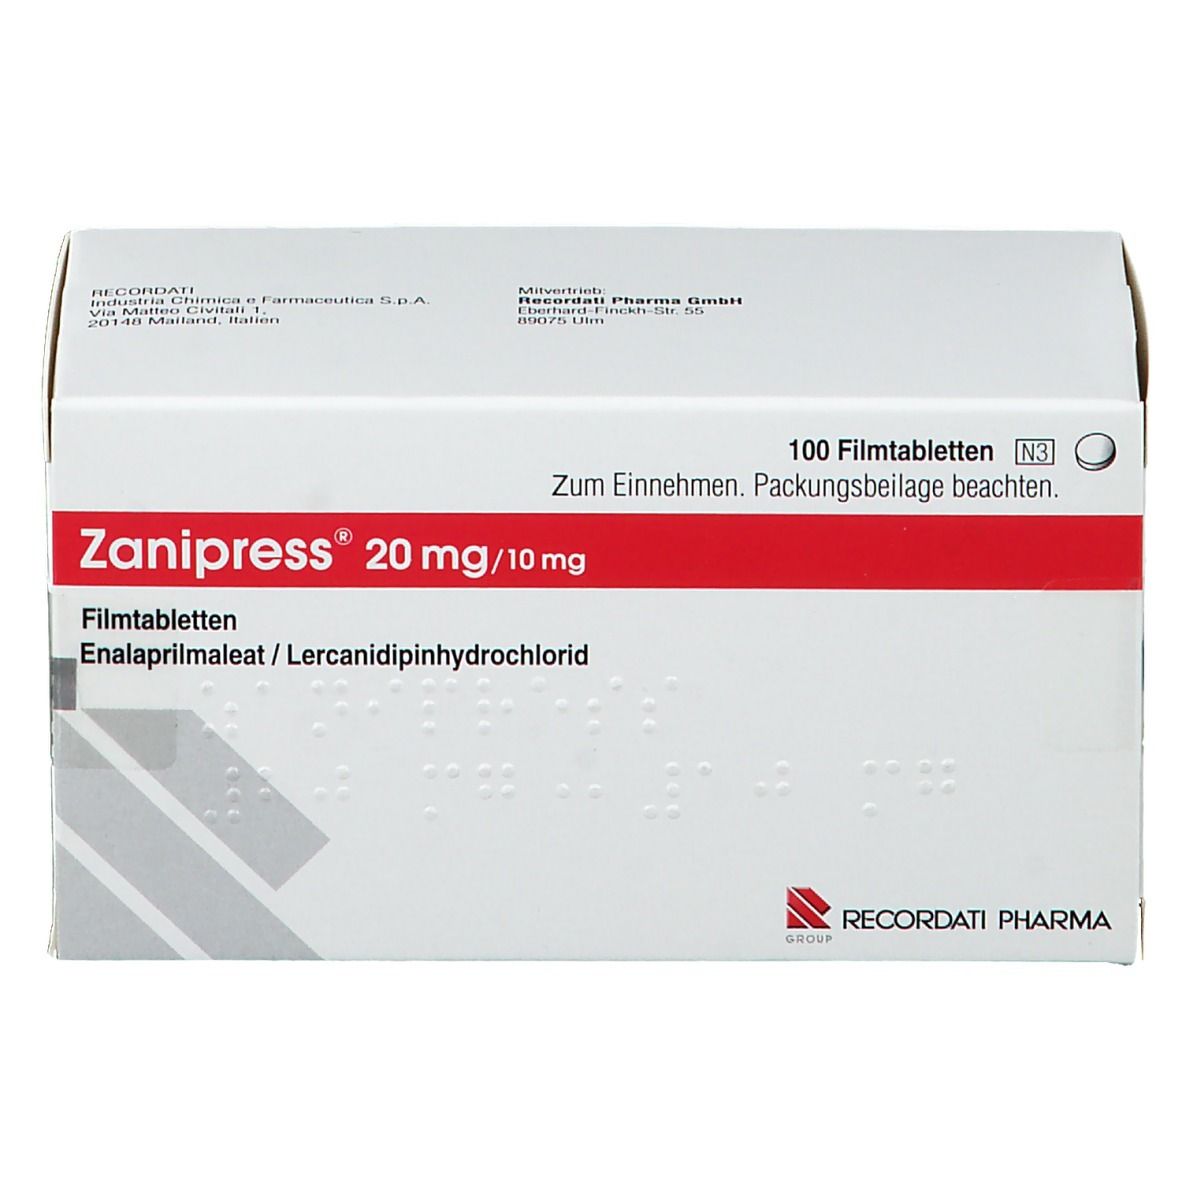 Zanipress® 20 mg/10 mg